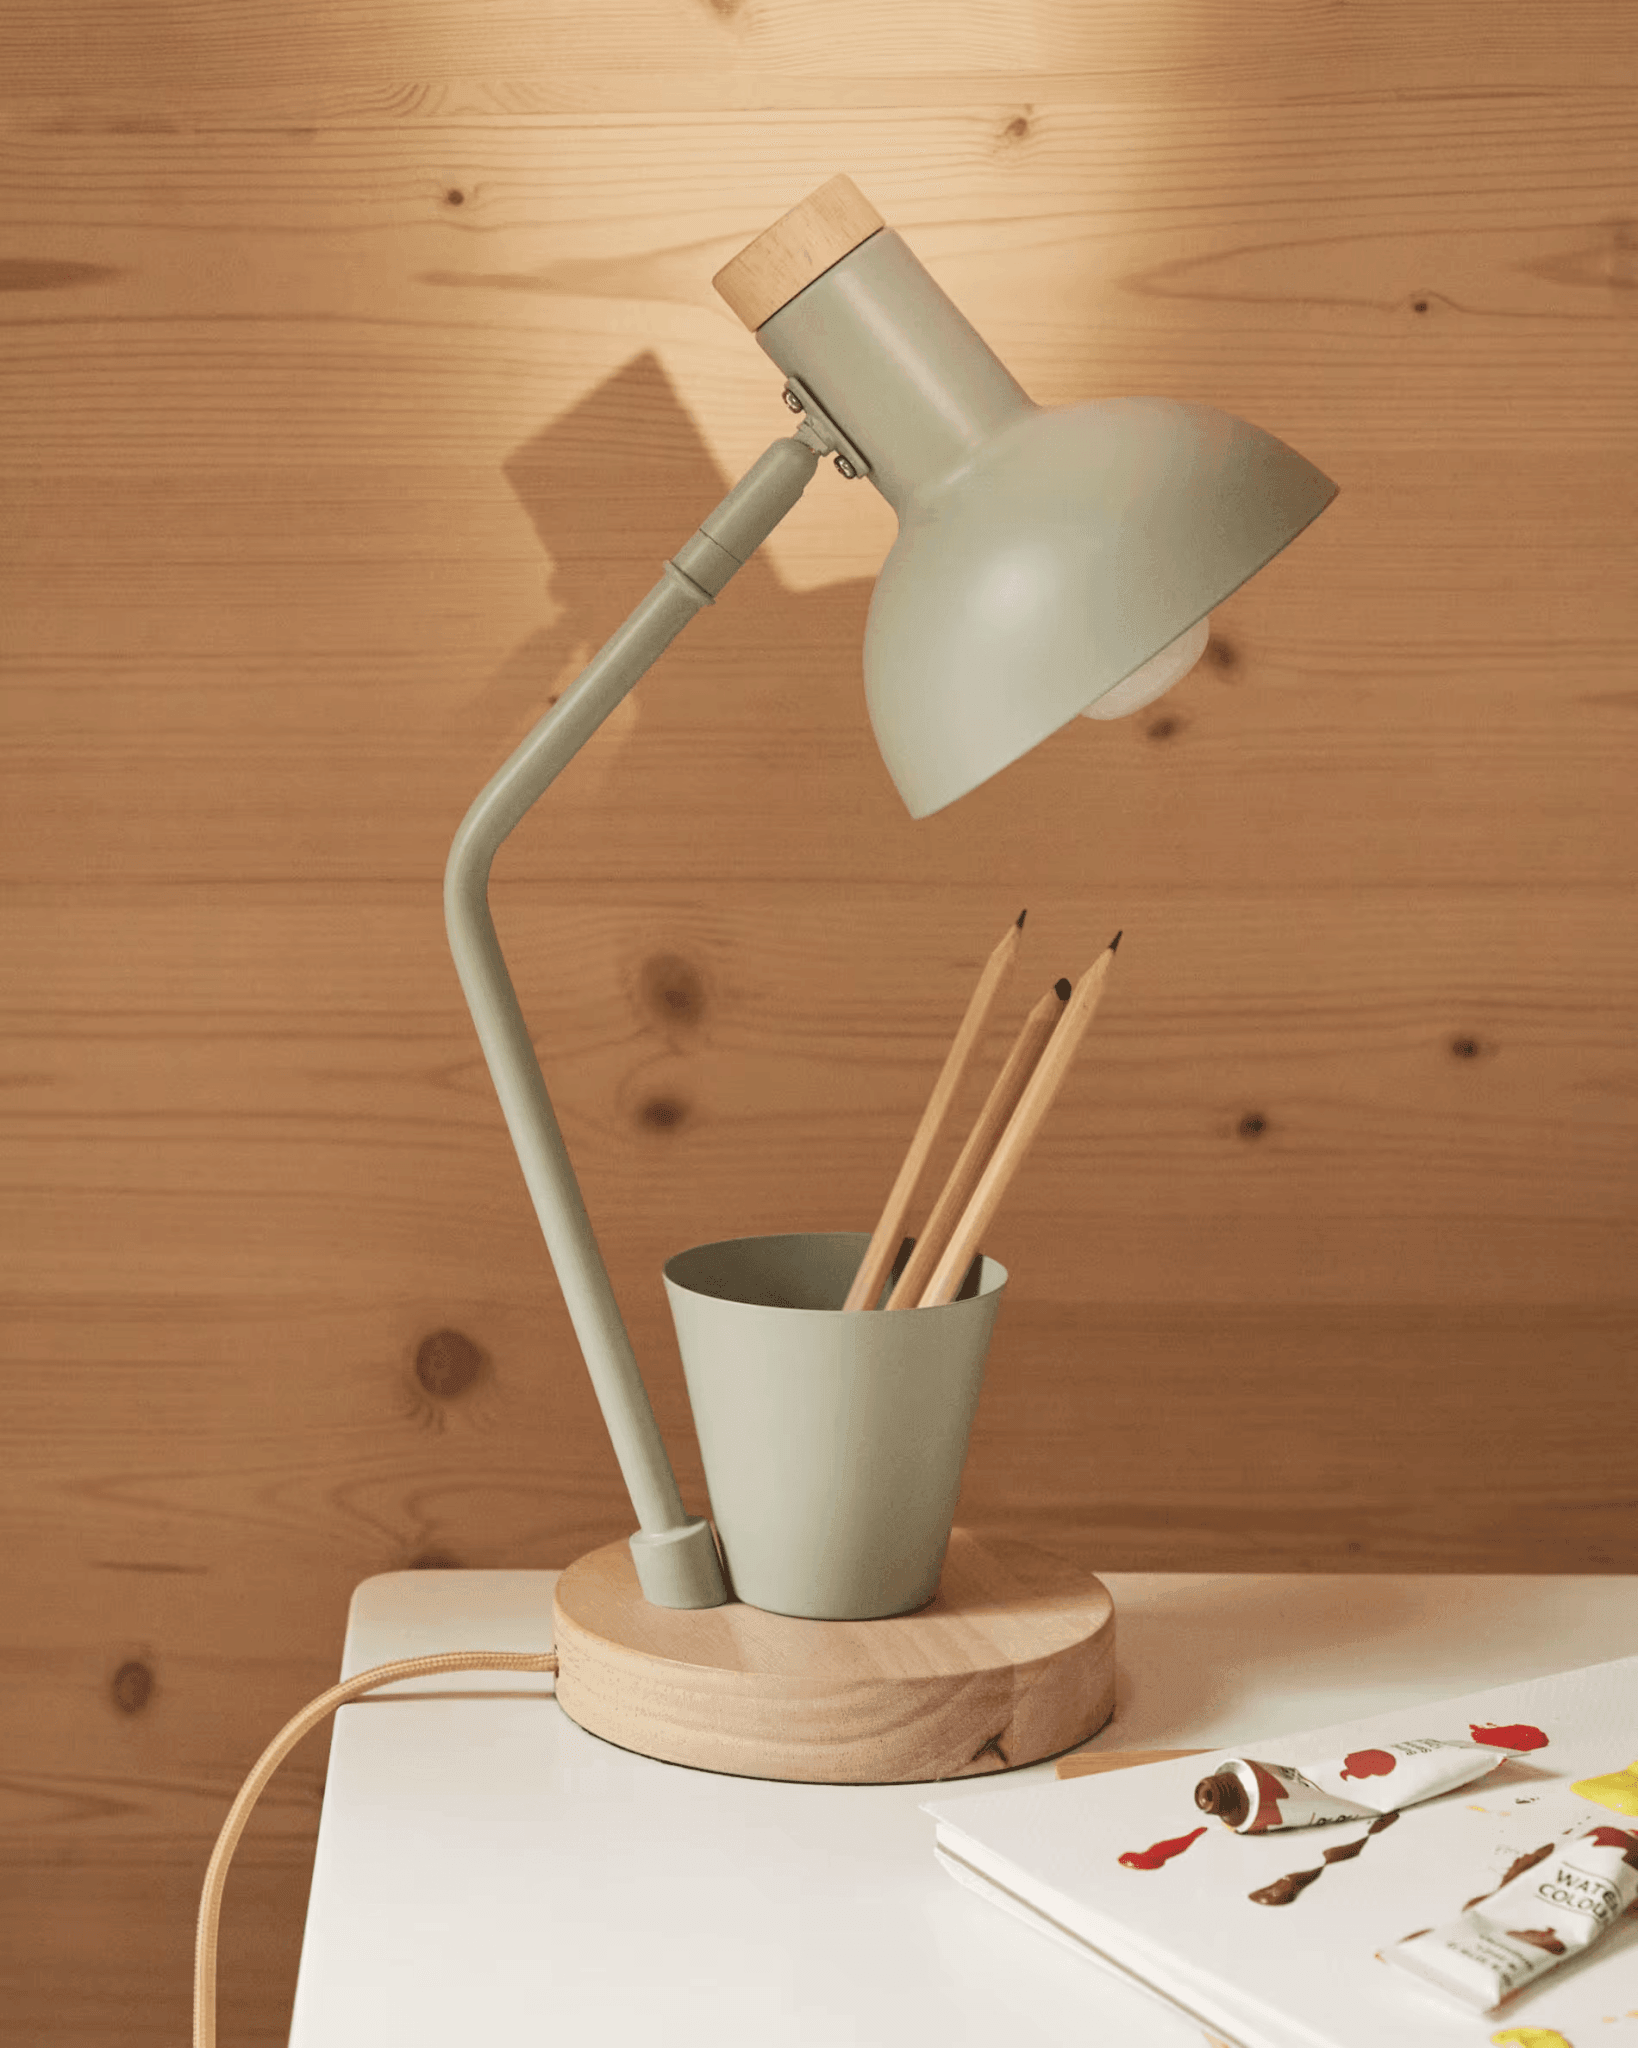 Lampa biurowa z pojemnikiem KATIA zielony La Forma    Eye on Design